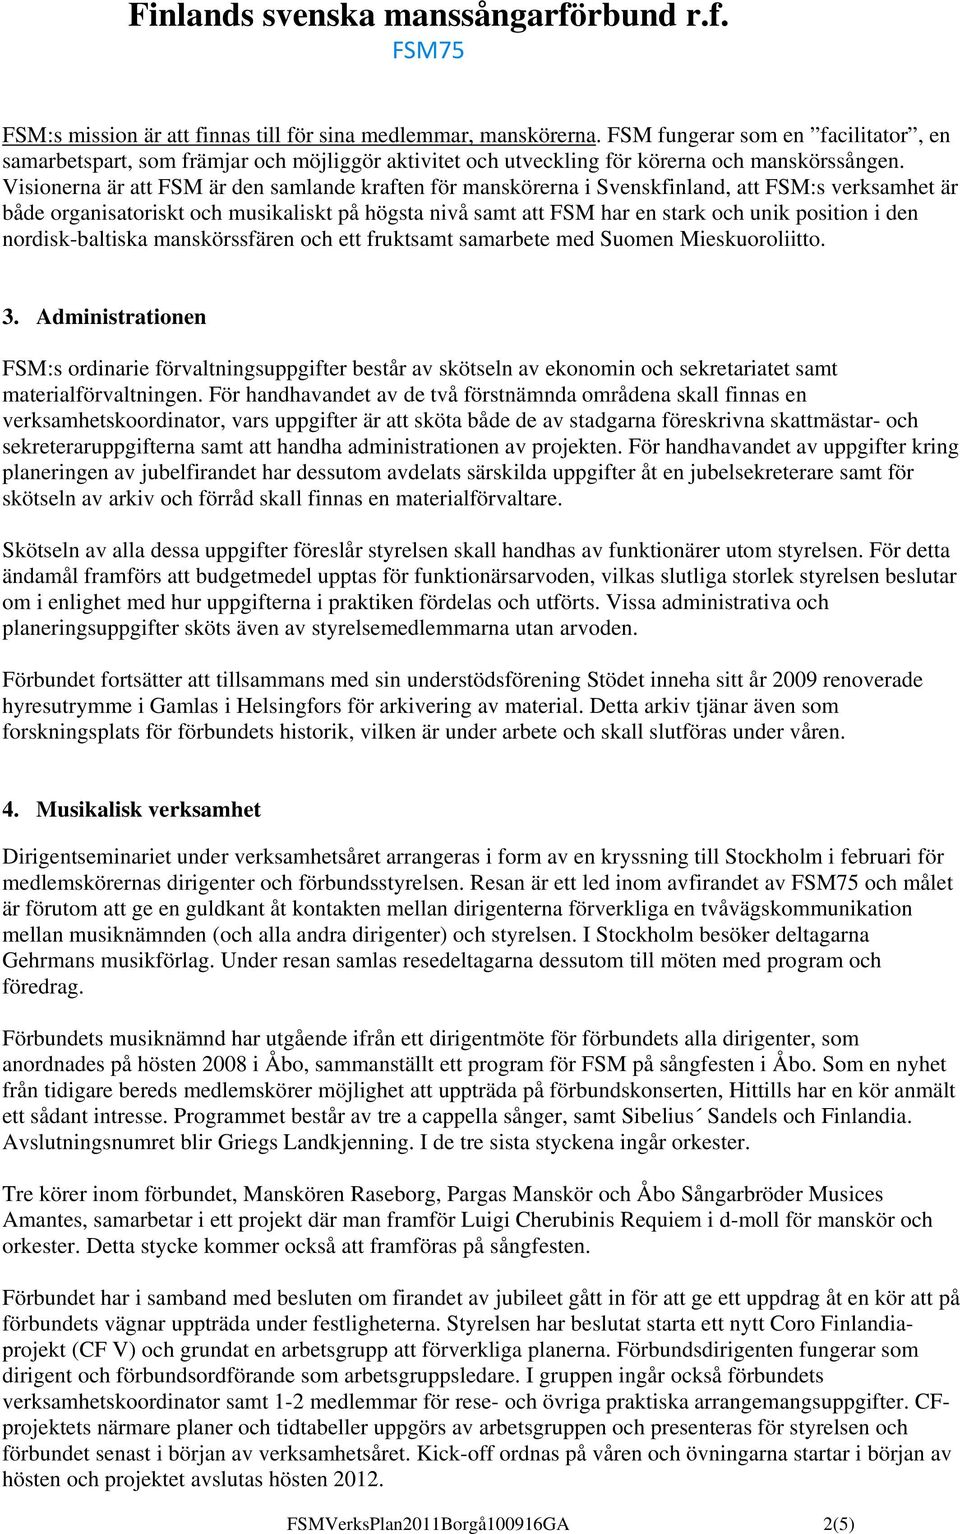 i den nordisk-baltiska manskörssfären och ett fruktsamt samarbete med Suomen Mieskuoroliitto. 3.